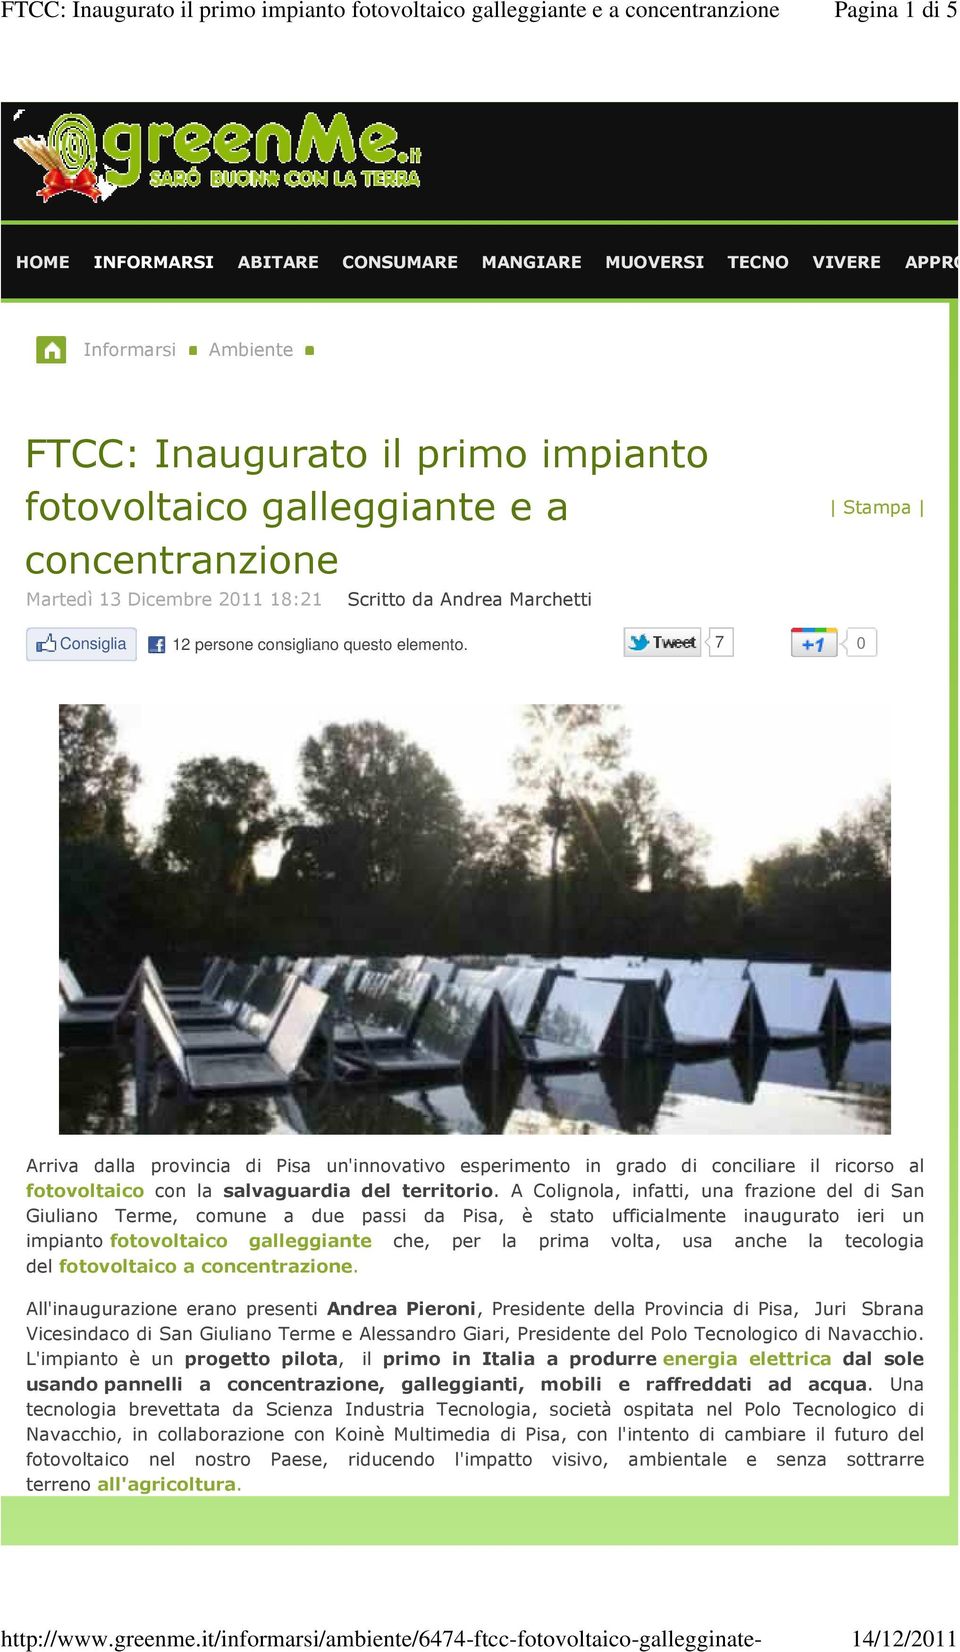 7 0 Arriva dalla provincia di Pisa un'innovativo esperimento in grado di conciliare il ricorso al fotovoltaico con la salvaguardia del territorio.